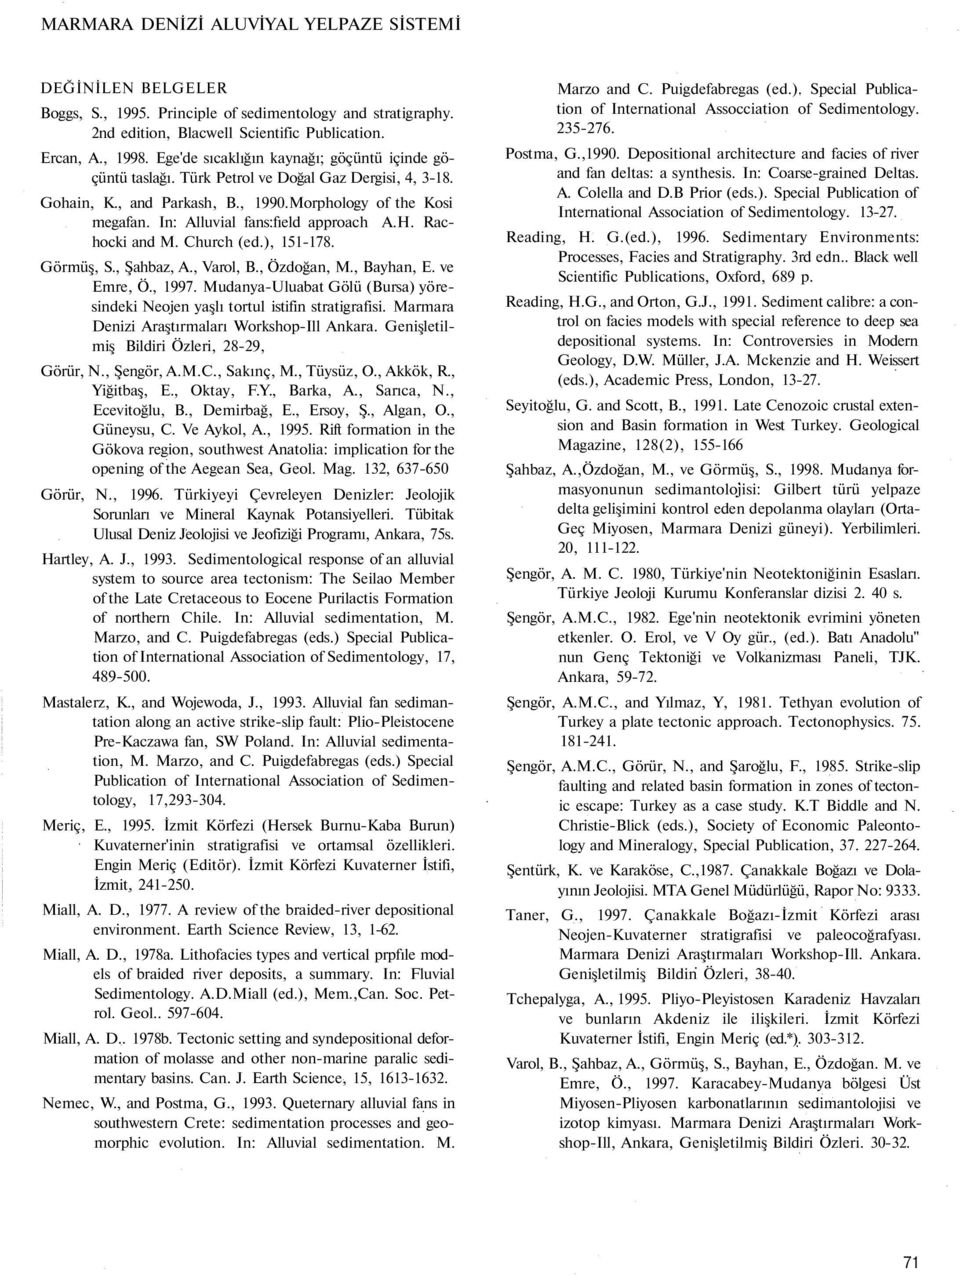 In: Alluvial fans:fıeld approach A.H. Rachocki and M. Church (ed.), 151-178. Görmüş, S., Şahbaz, A., Varol, B., Özdoğan, M., Bayhan, E. ve Emre, Ö., 1997.